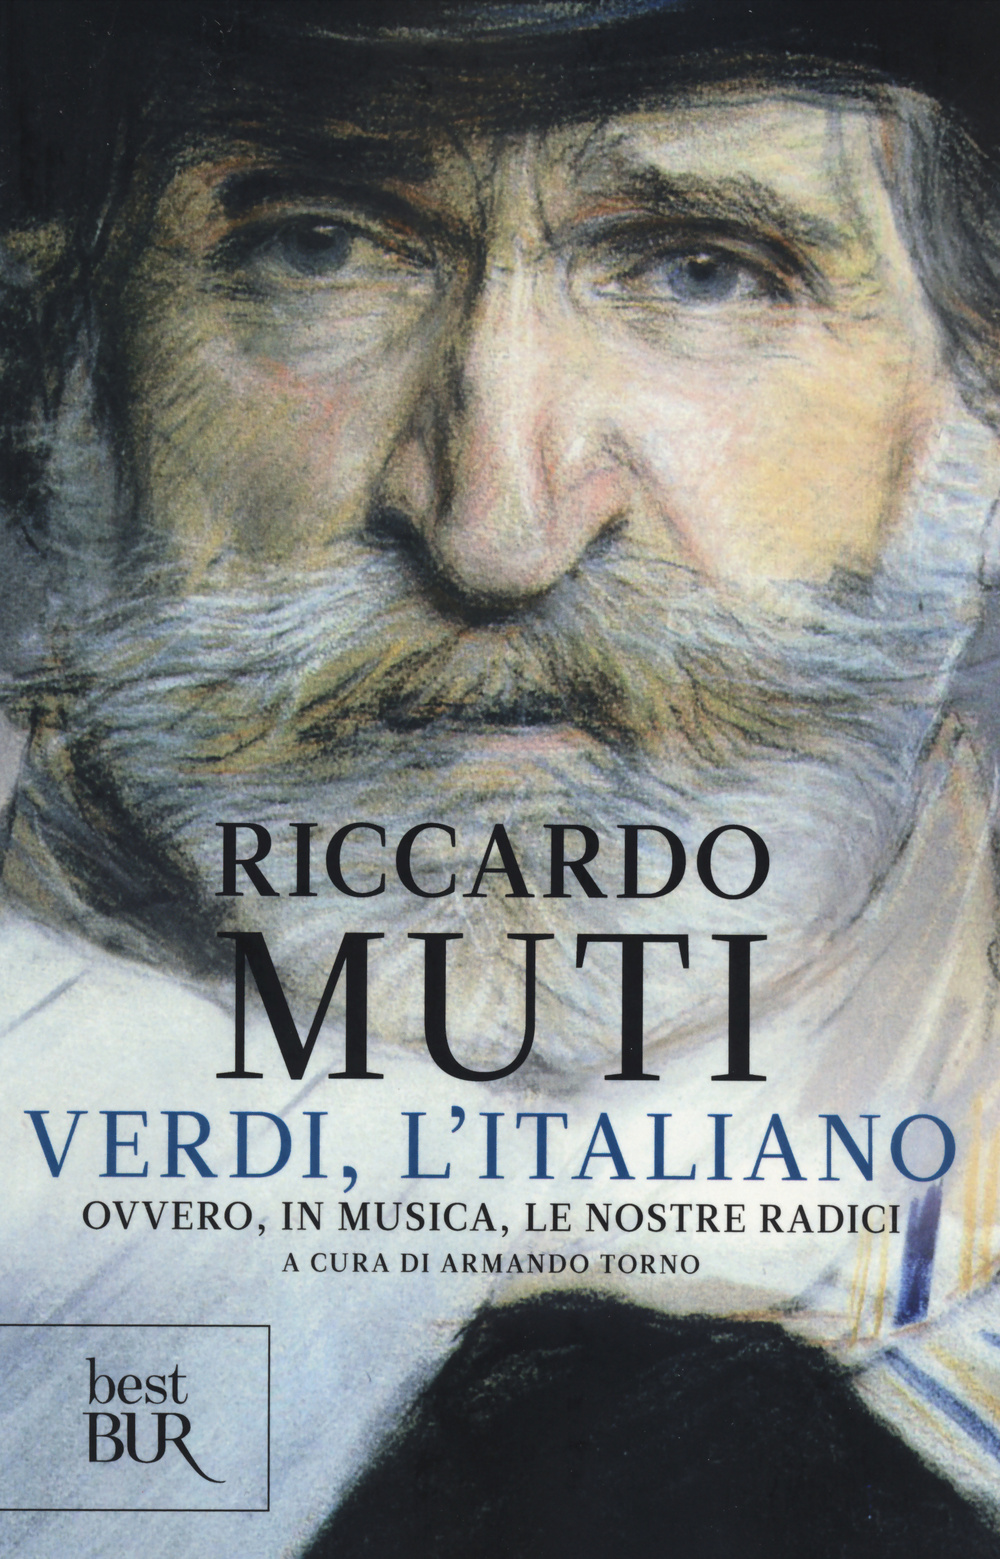 Verdi, l'italiano. Ovvero, in musica, le nostre radici